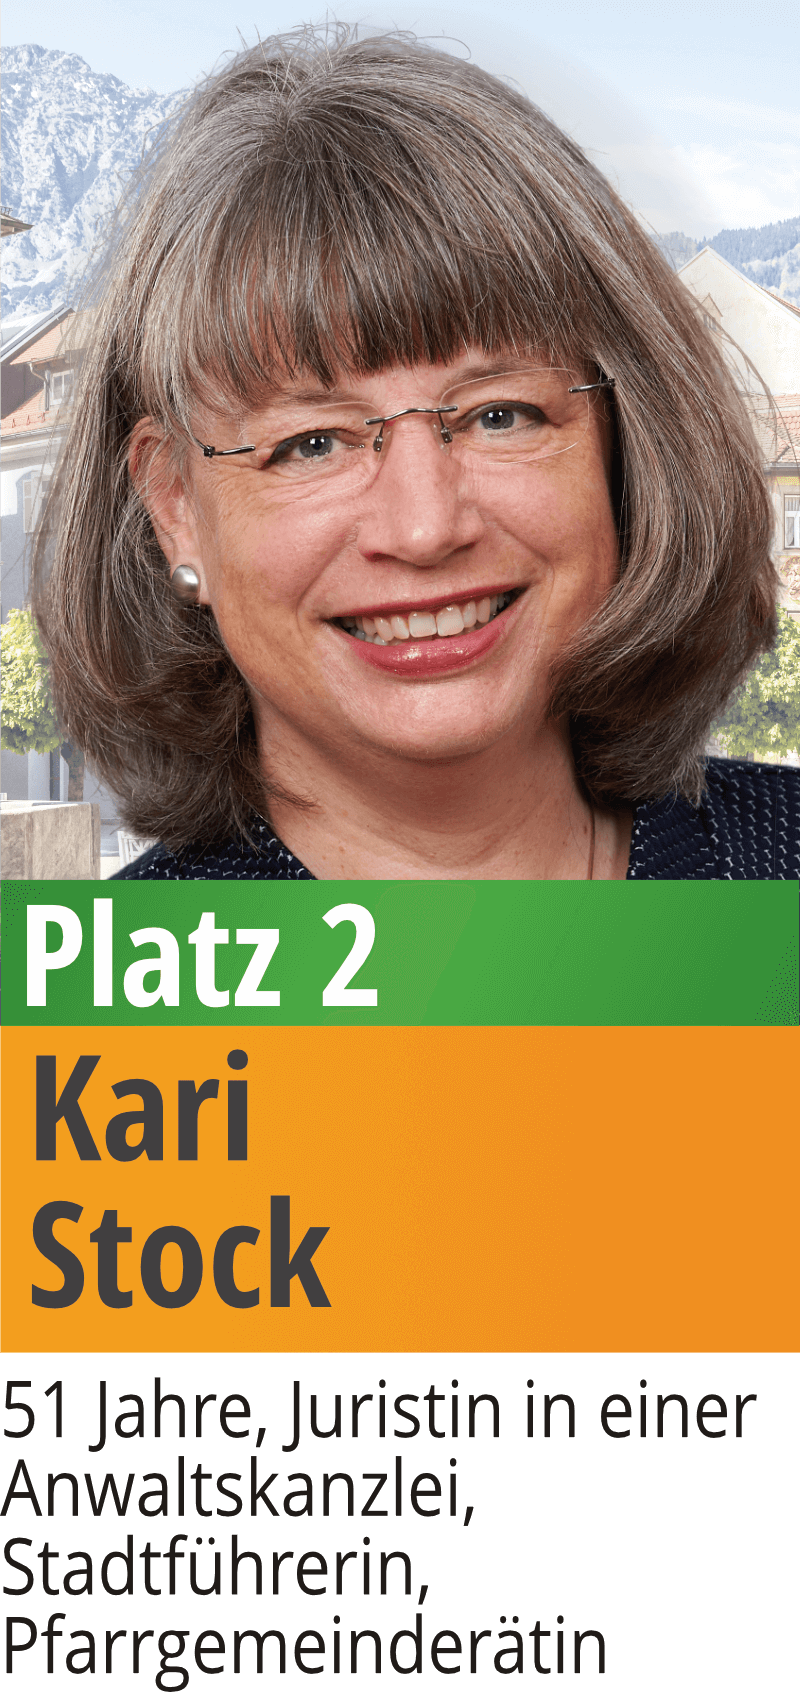 02 Kari Stock